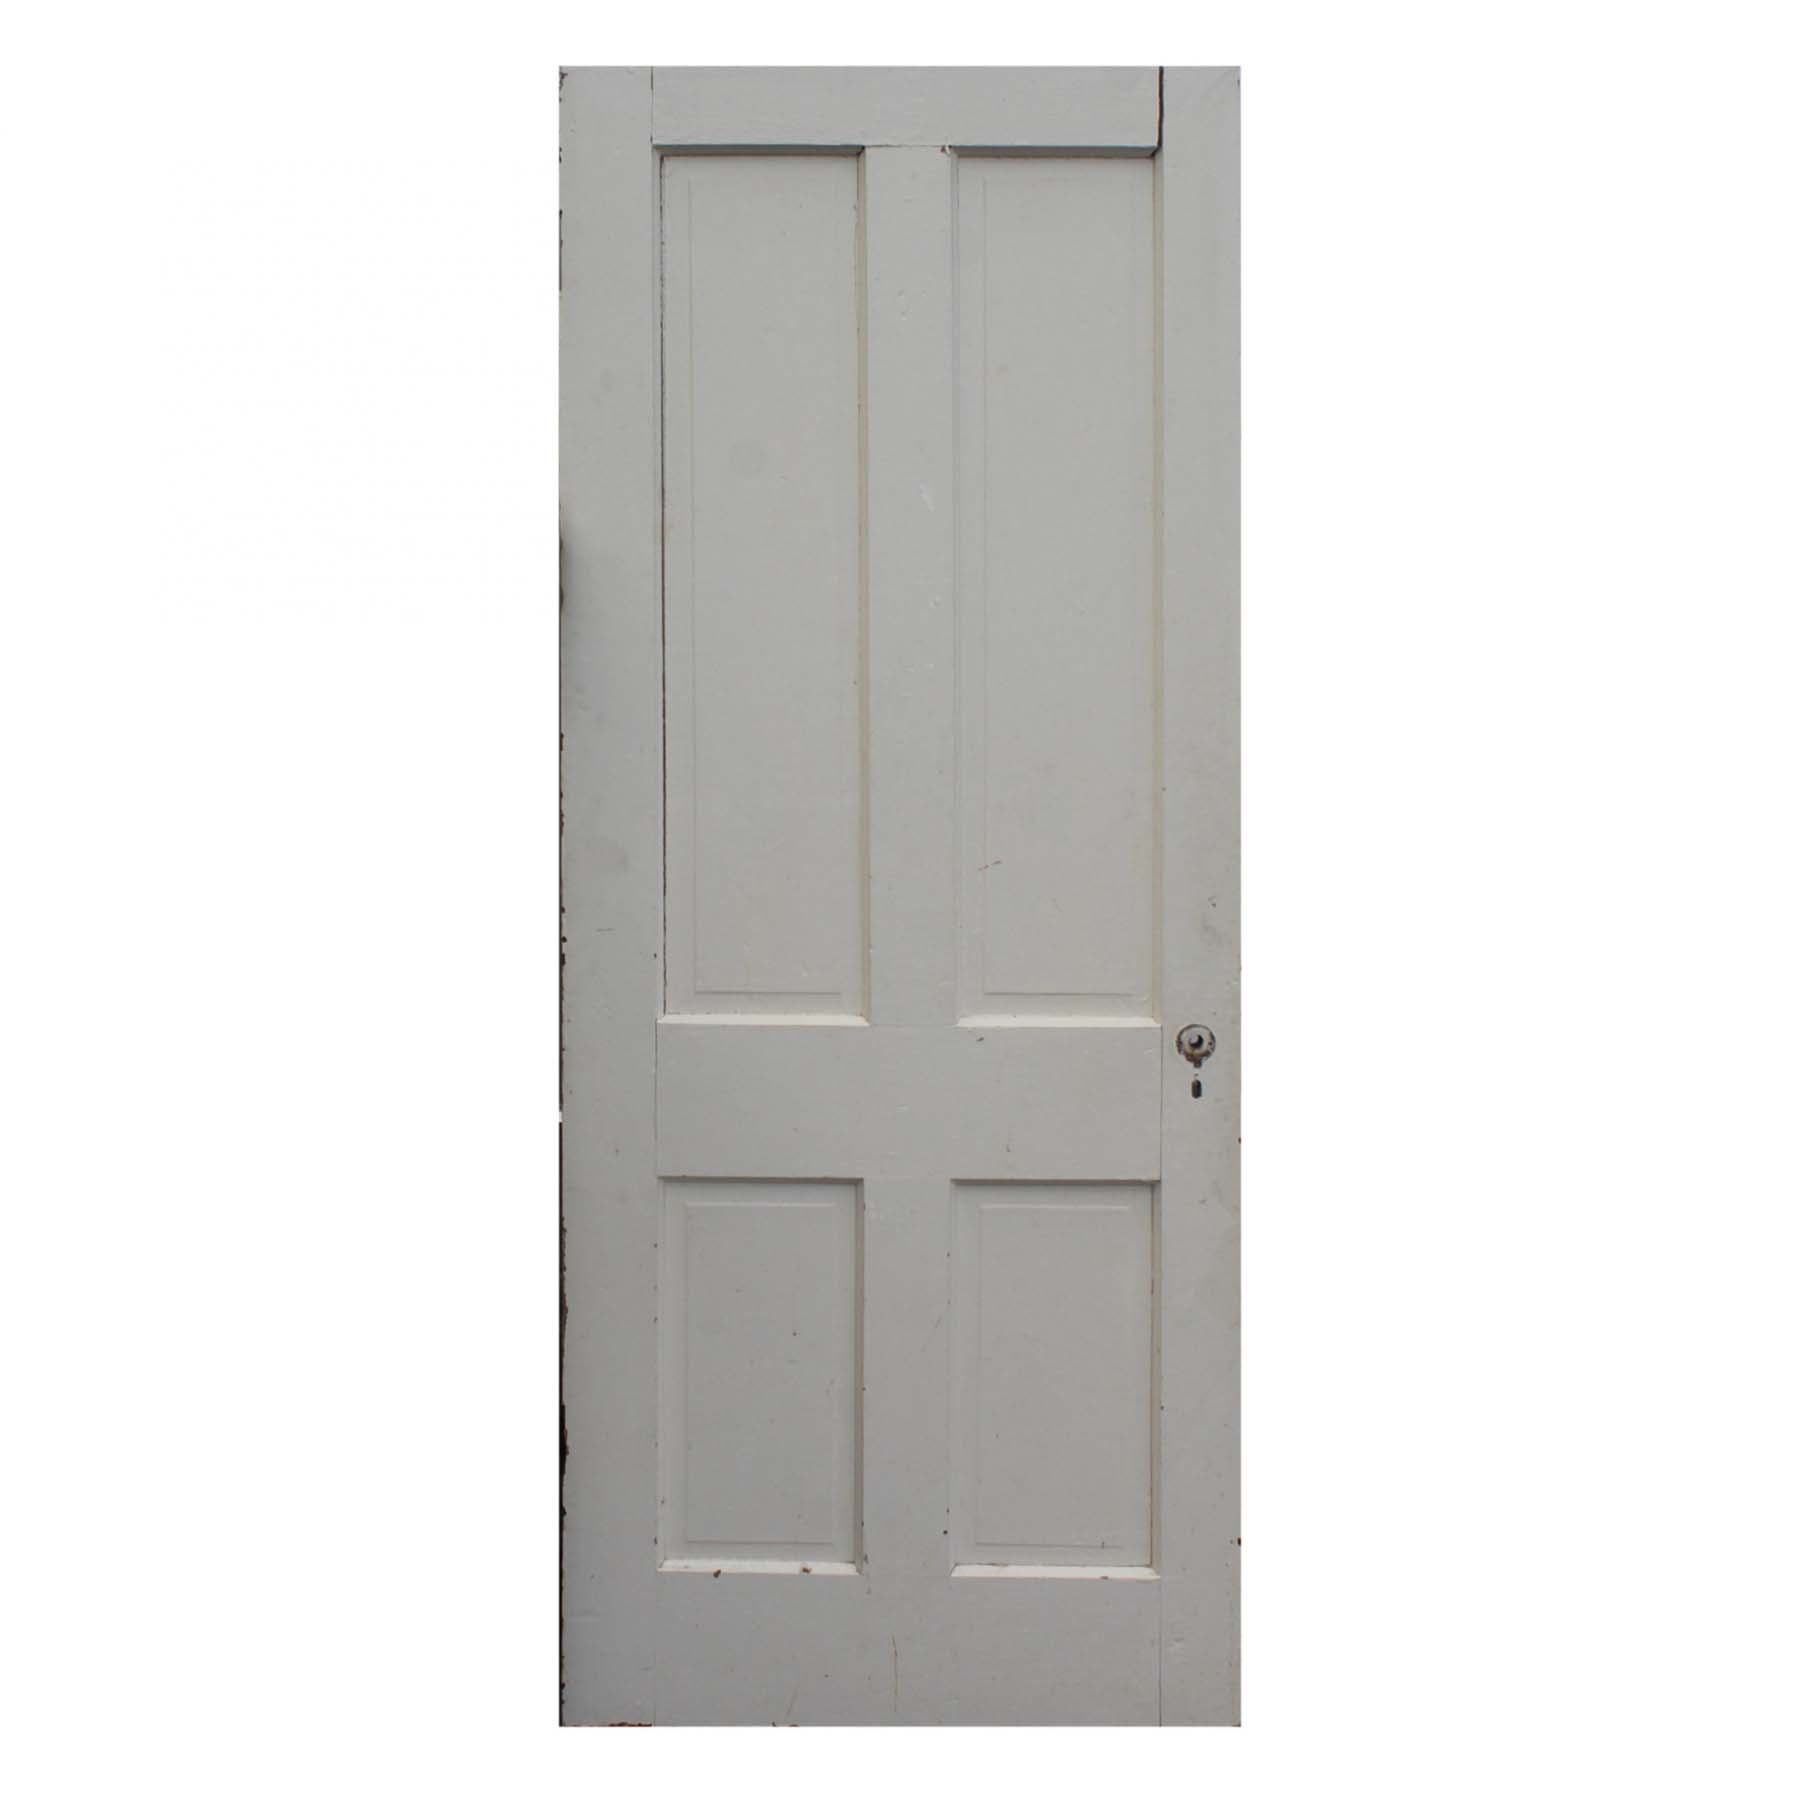 Reclaimed 31” Four-Panel Solid Wood Door-72310